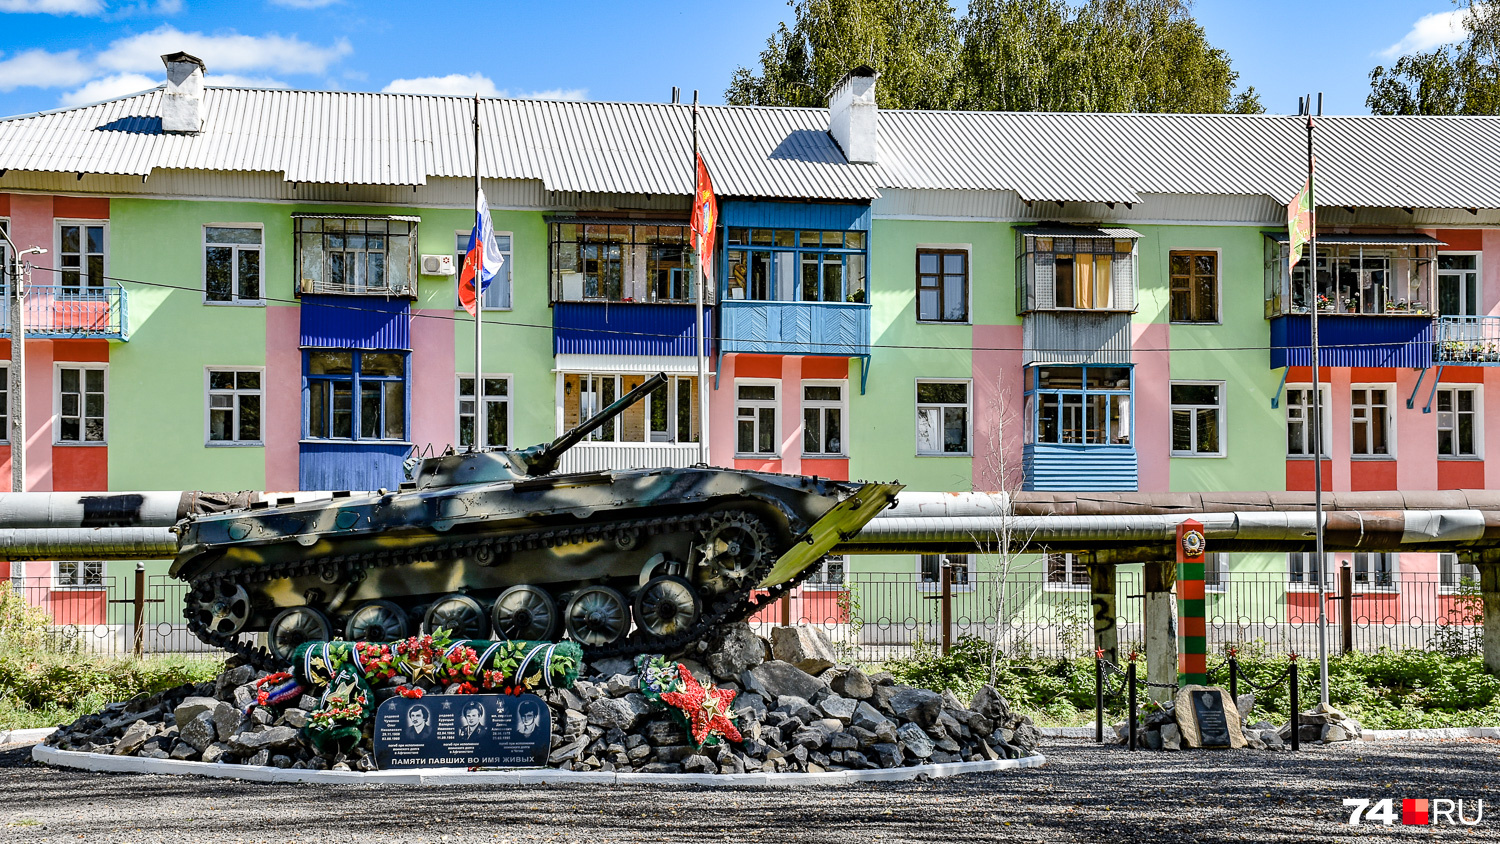 Памятник бойцам ВДВ на фоне расцвеченного дома в центральном парке